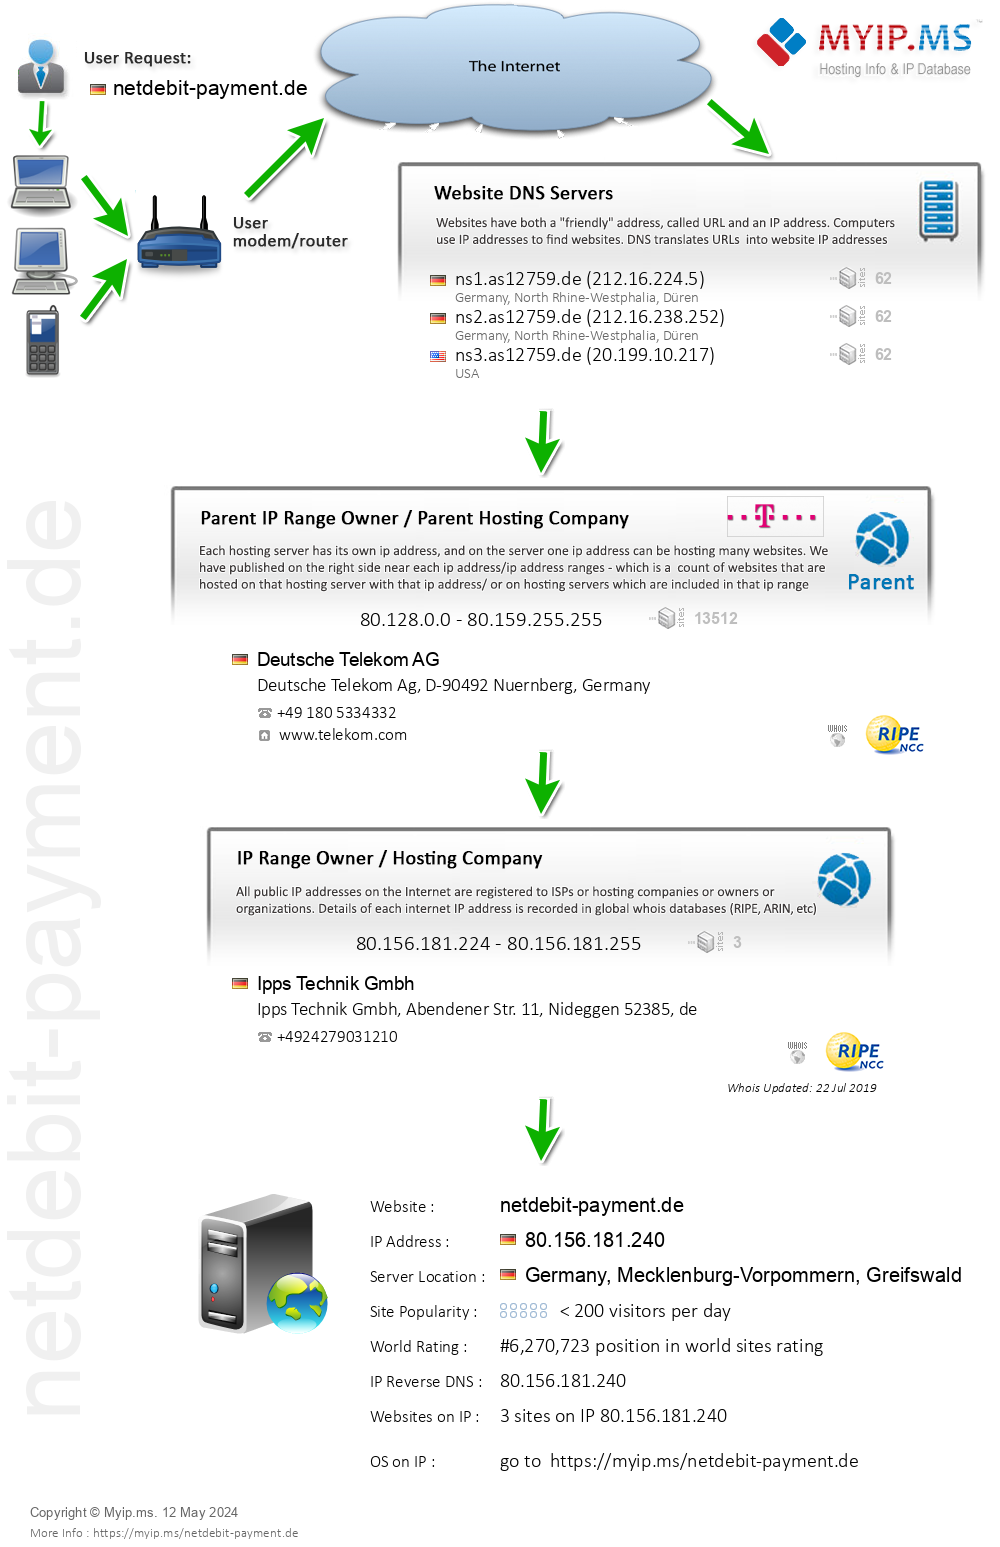 Netdebit-payment.de - Website Hosting Visual IP Diagram